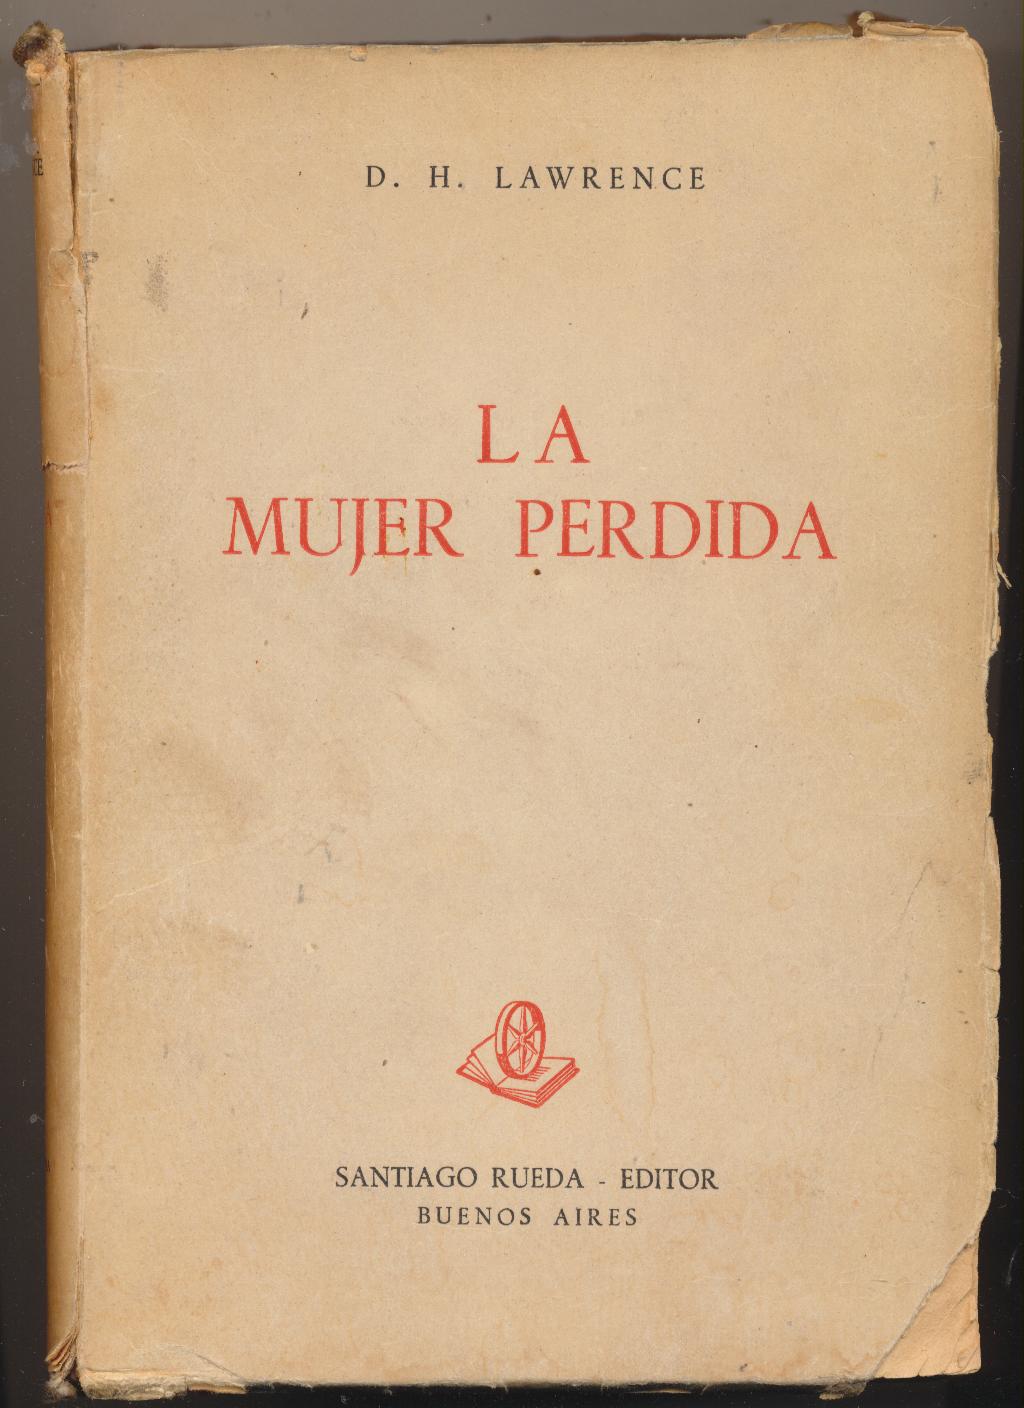 D. H. Lawrence. La Mujer perdida. Santiago Rueda Editor. Buenos Aires 1943